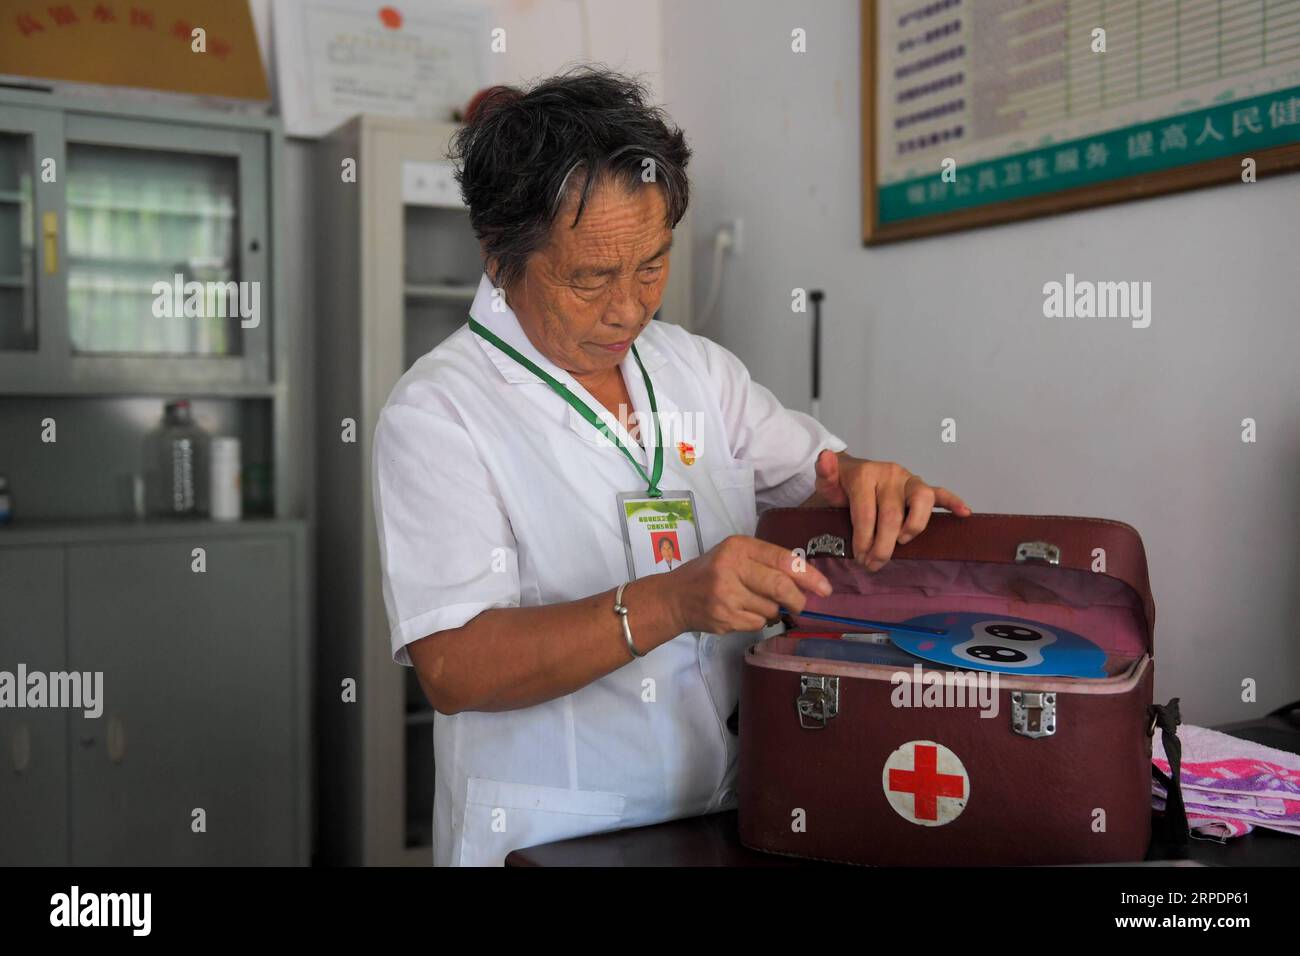 (190809) -- NANCHANG, 9 août 2019 -- Gao Yinshui prépare son coffre à médicaments dans le village de Lixin de la ville de Meiling dans le district de Wanli de la ville de Nanchang, province de Jiangxi dans l'est de la Chine, le 8 août 2019. Presque tous les jours au cours des quatre dernières décennies, Gao Yinshui, médecin de village de 69 ans, marche sur des kilomètres sur des routes de montagne pour voir ses patients dans neuf villages différents. Fin 1970, la mère de Gao a eu une urgence et a eu la chance d être sauvée par un médecin rural local. À cause de cela, Gao Yinshui a renoncé à l'opportunité d'être enseignant et a choisi de devenir médecin rural. Cependant, elle n'a aucune base médicale Banque D'Images